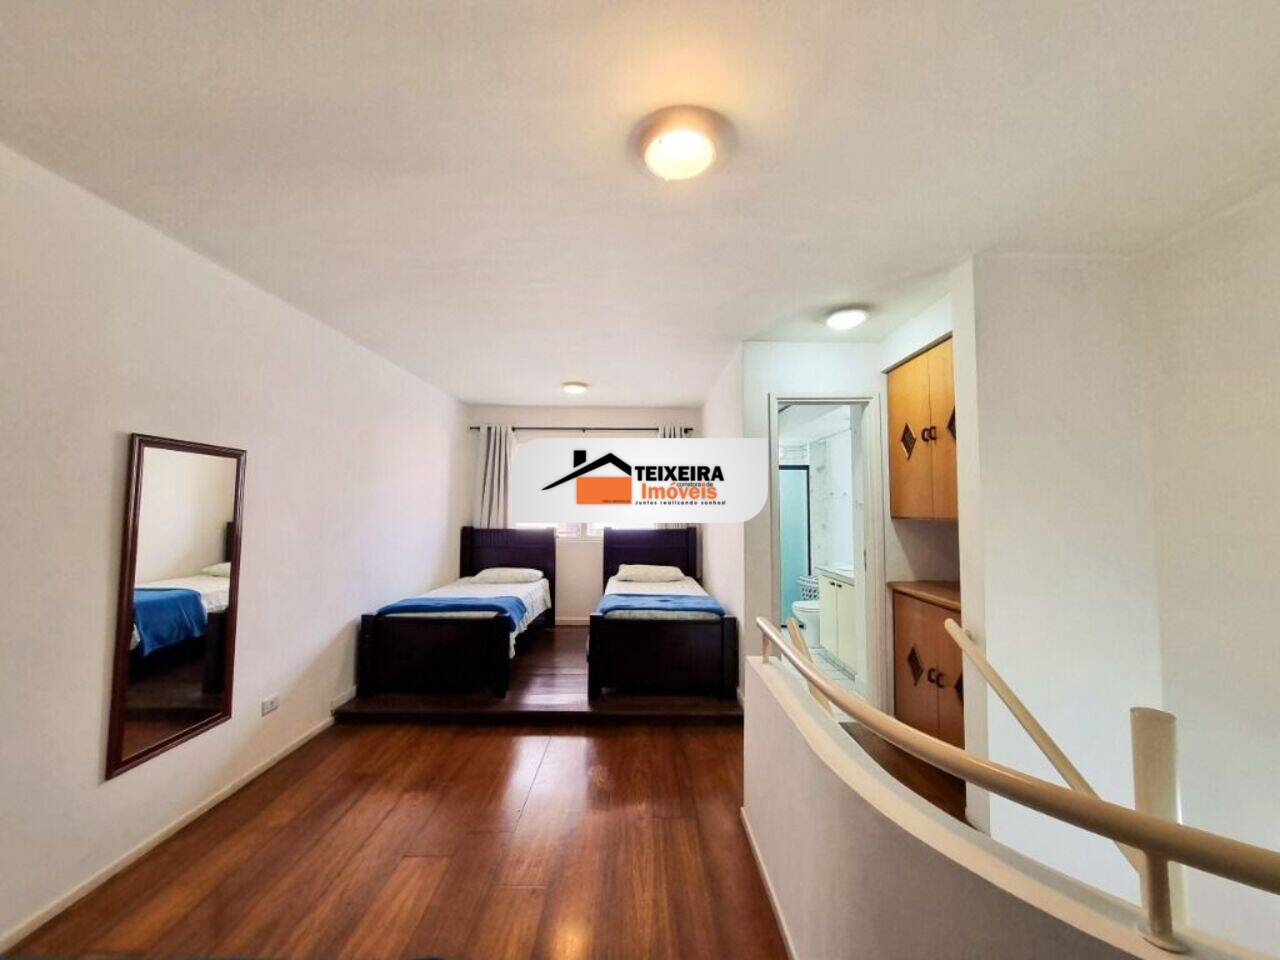 Apartamento duplex São Benedito, Poços de Caldas - MG